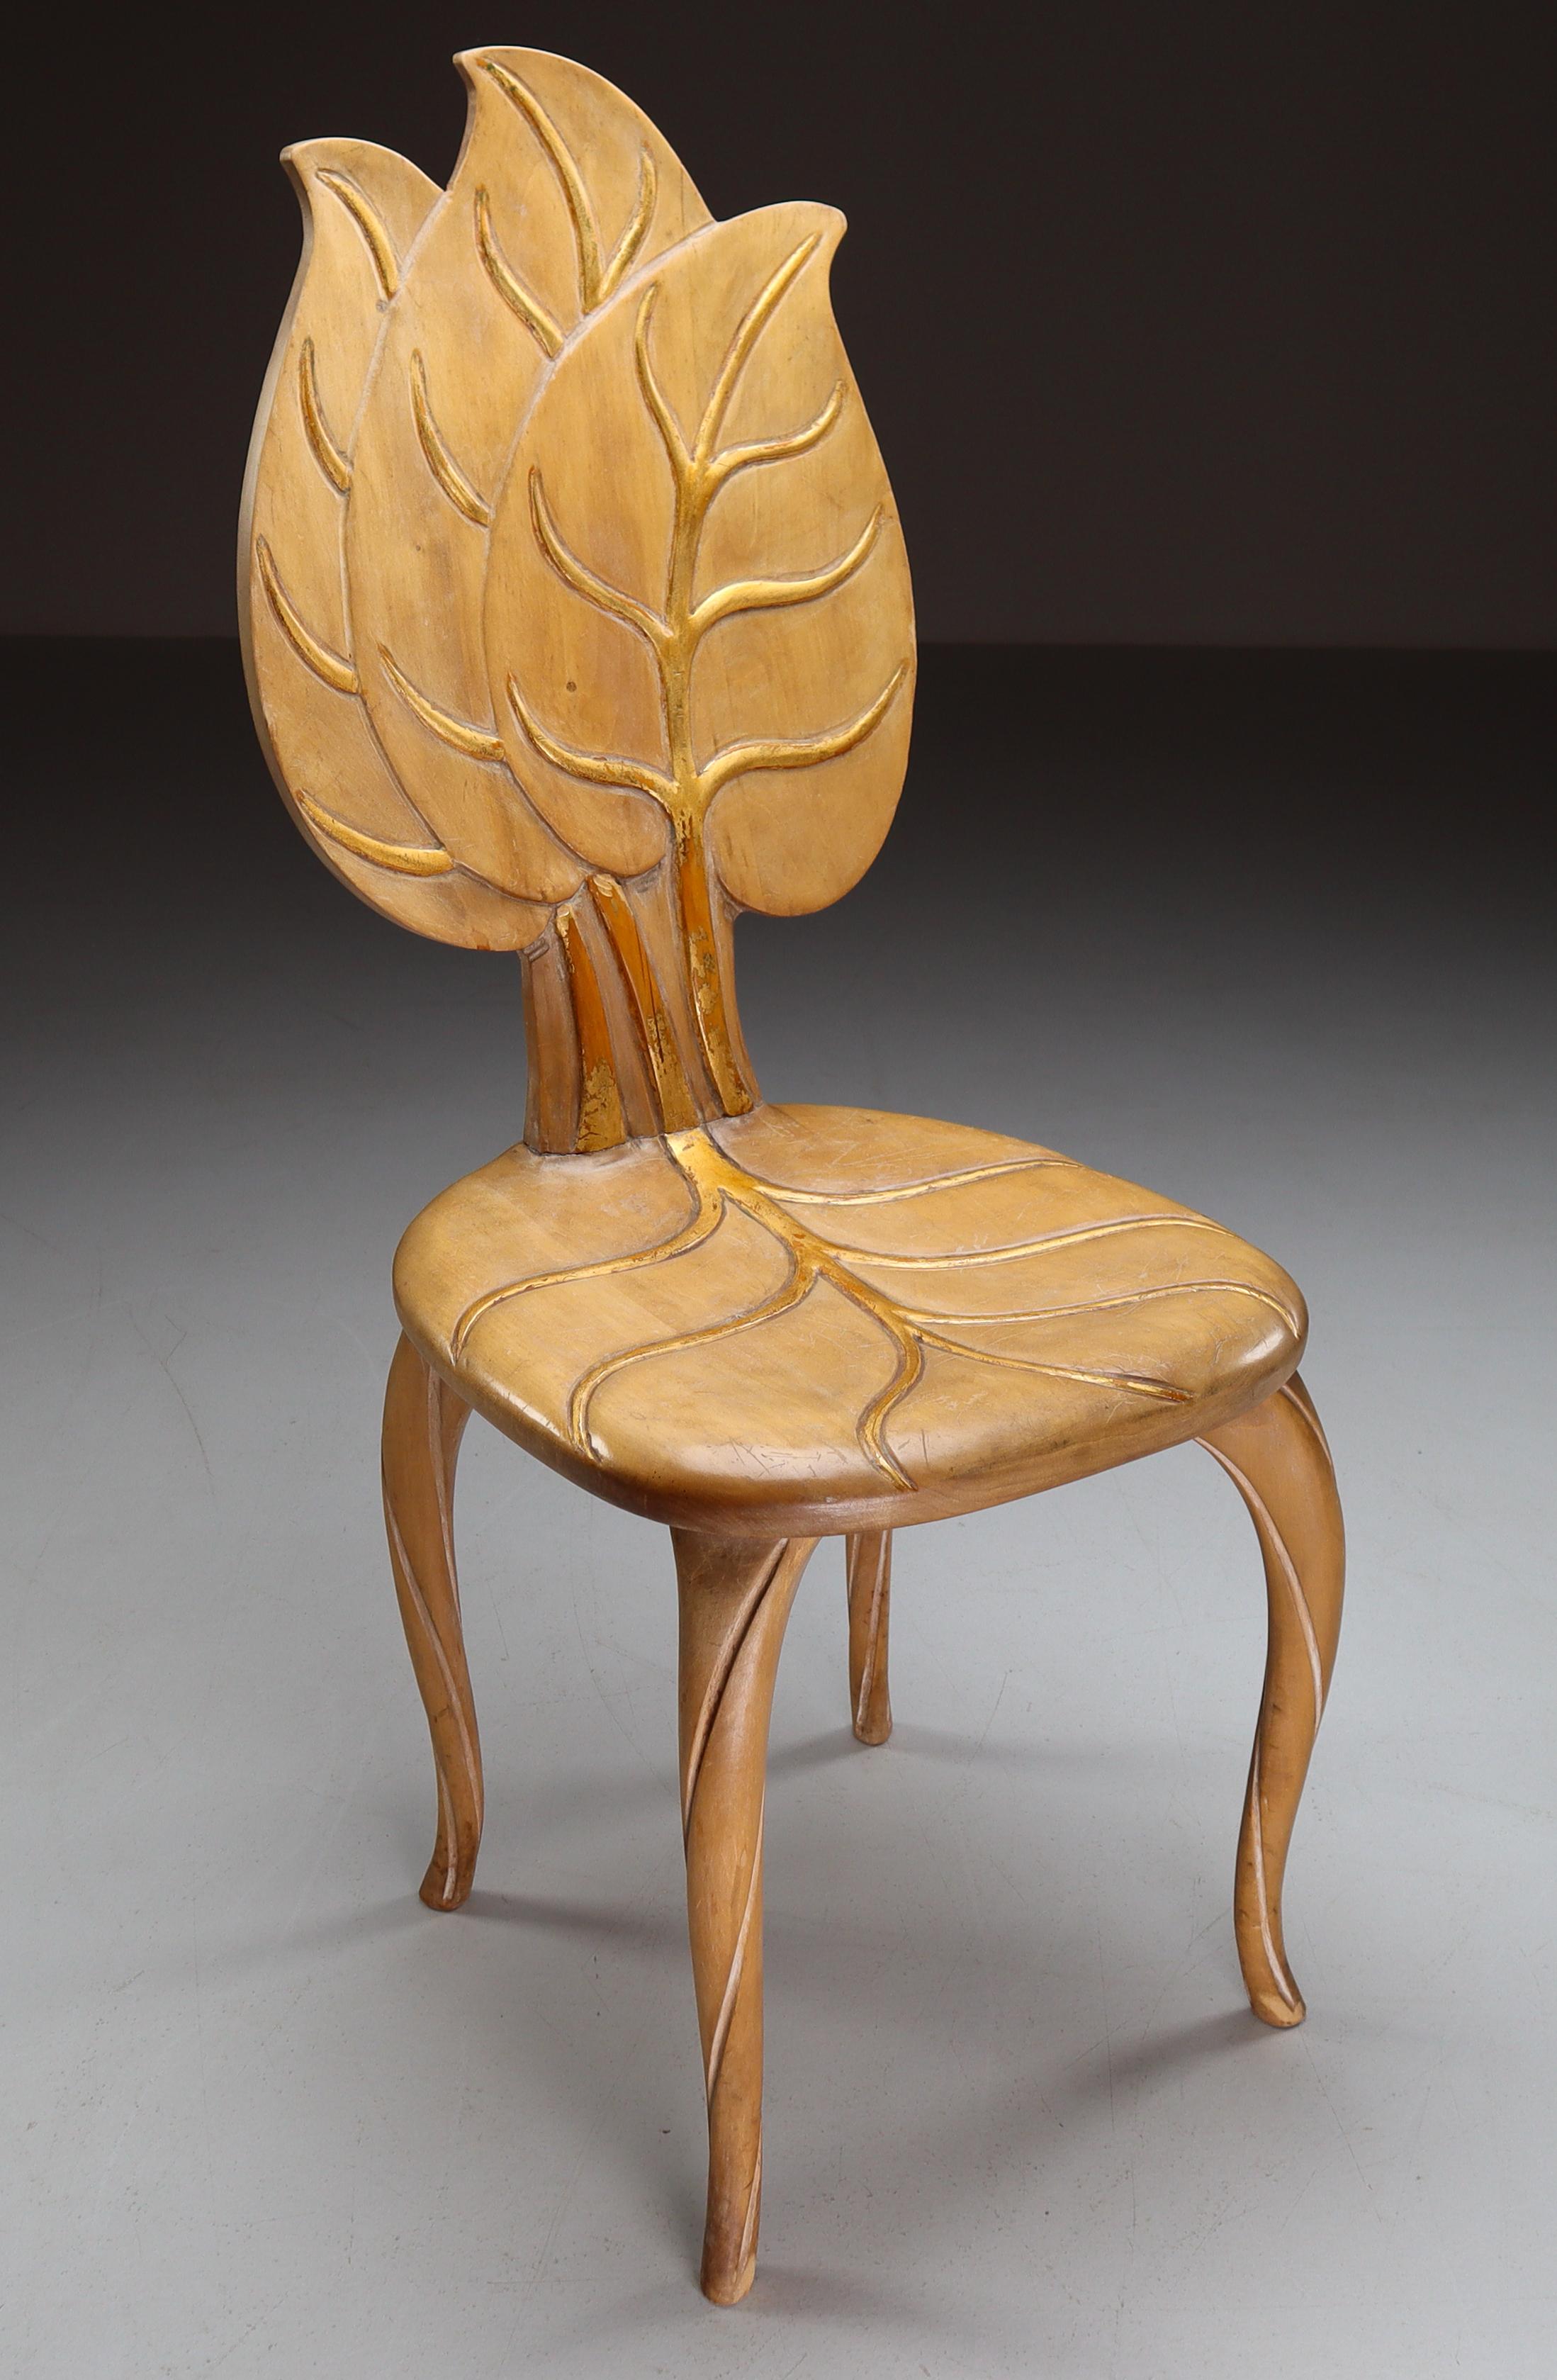 1970er Bartolozzi & Maioli handgeschnitzter Holzstuhl mit originaler Patina. Diese Stühle sind ein echter Blickfang für jedes Interieur wie Wohnzimmer, Familienzimmer, Vorführraum oder Hotel. Es passt auch perfekt in eine Lobby eines